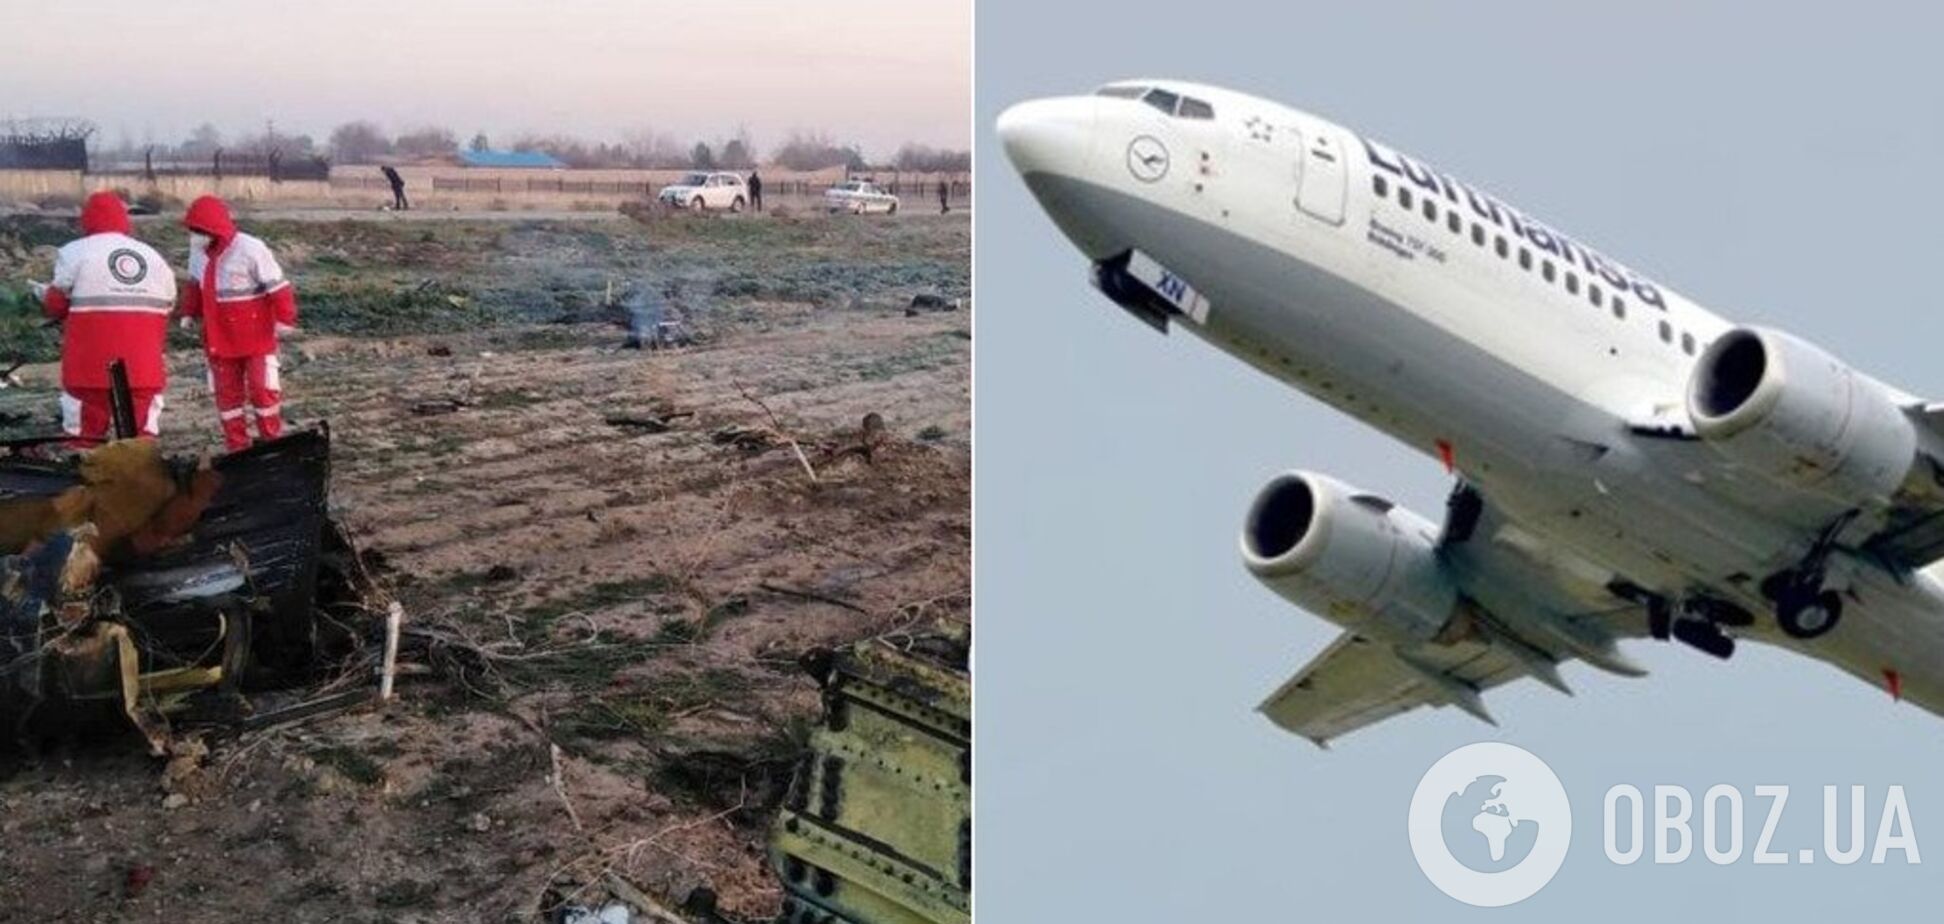 The New York Times докладно відтворив трагічний рейс українського літака в Ірані: відео